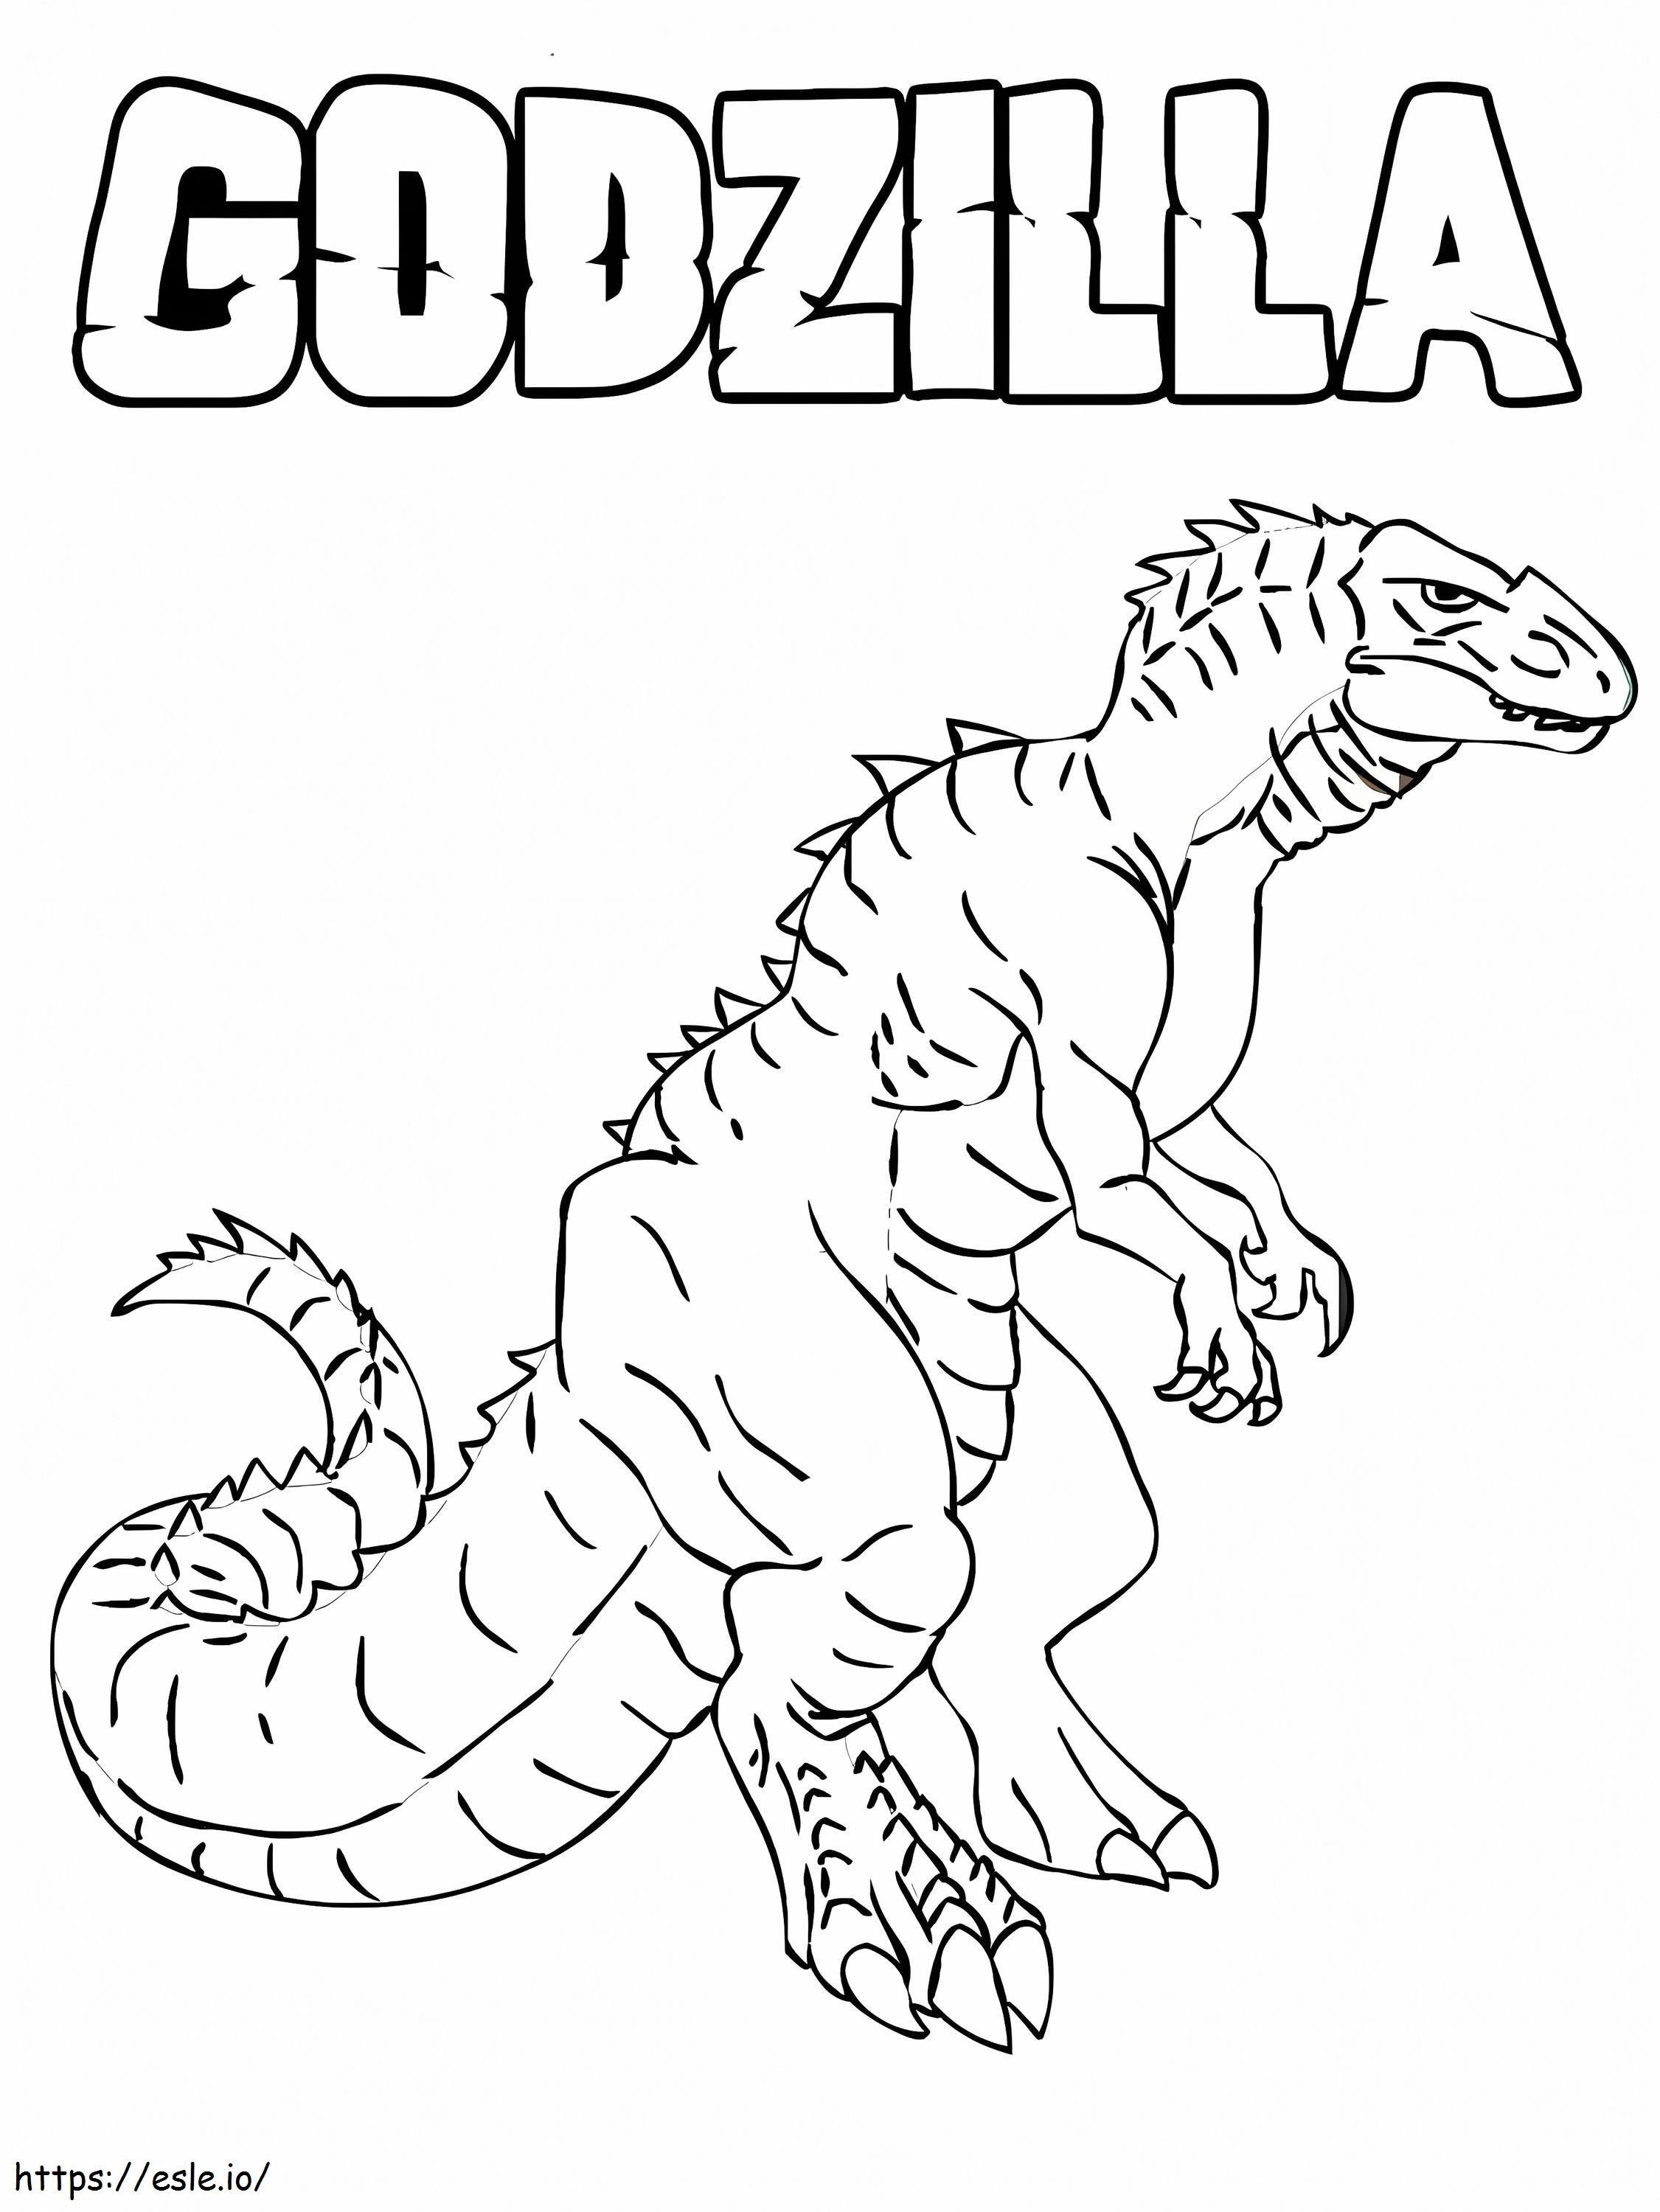 Riesiger Godzilla ausmalbilder